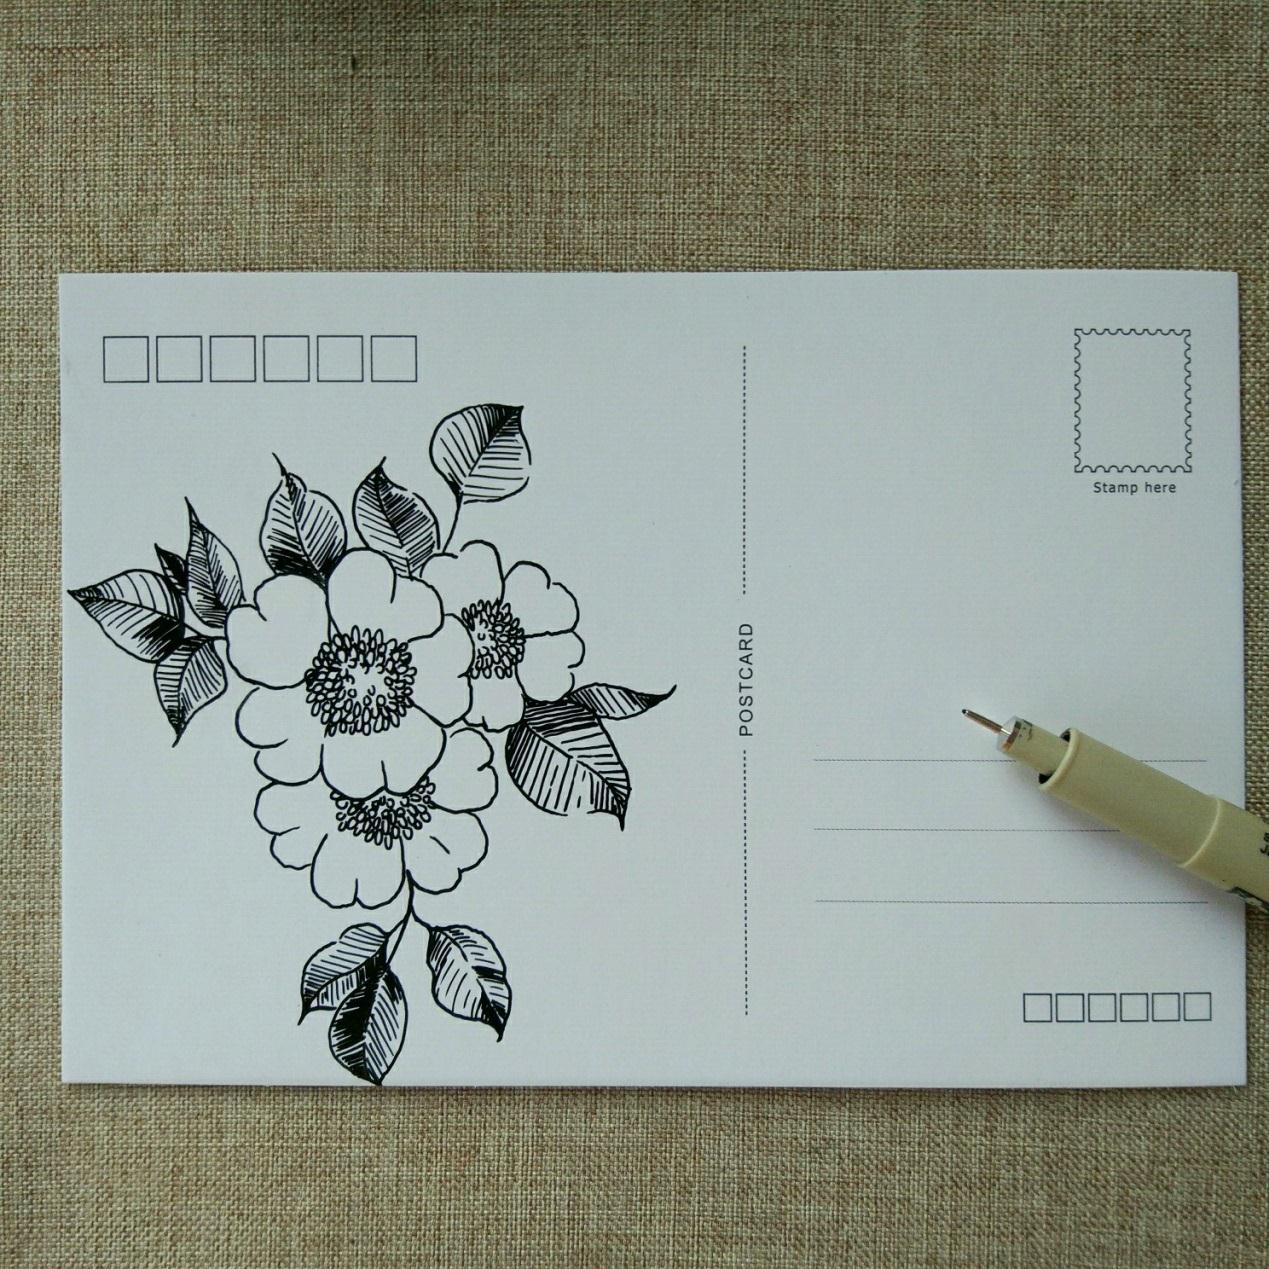 手工绘贺卡明信片手工制作方法,简单漂亮的花朵图案简单绘画方法